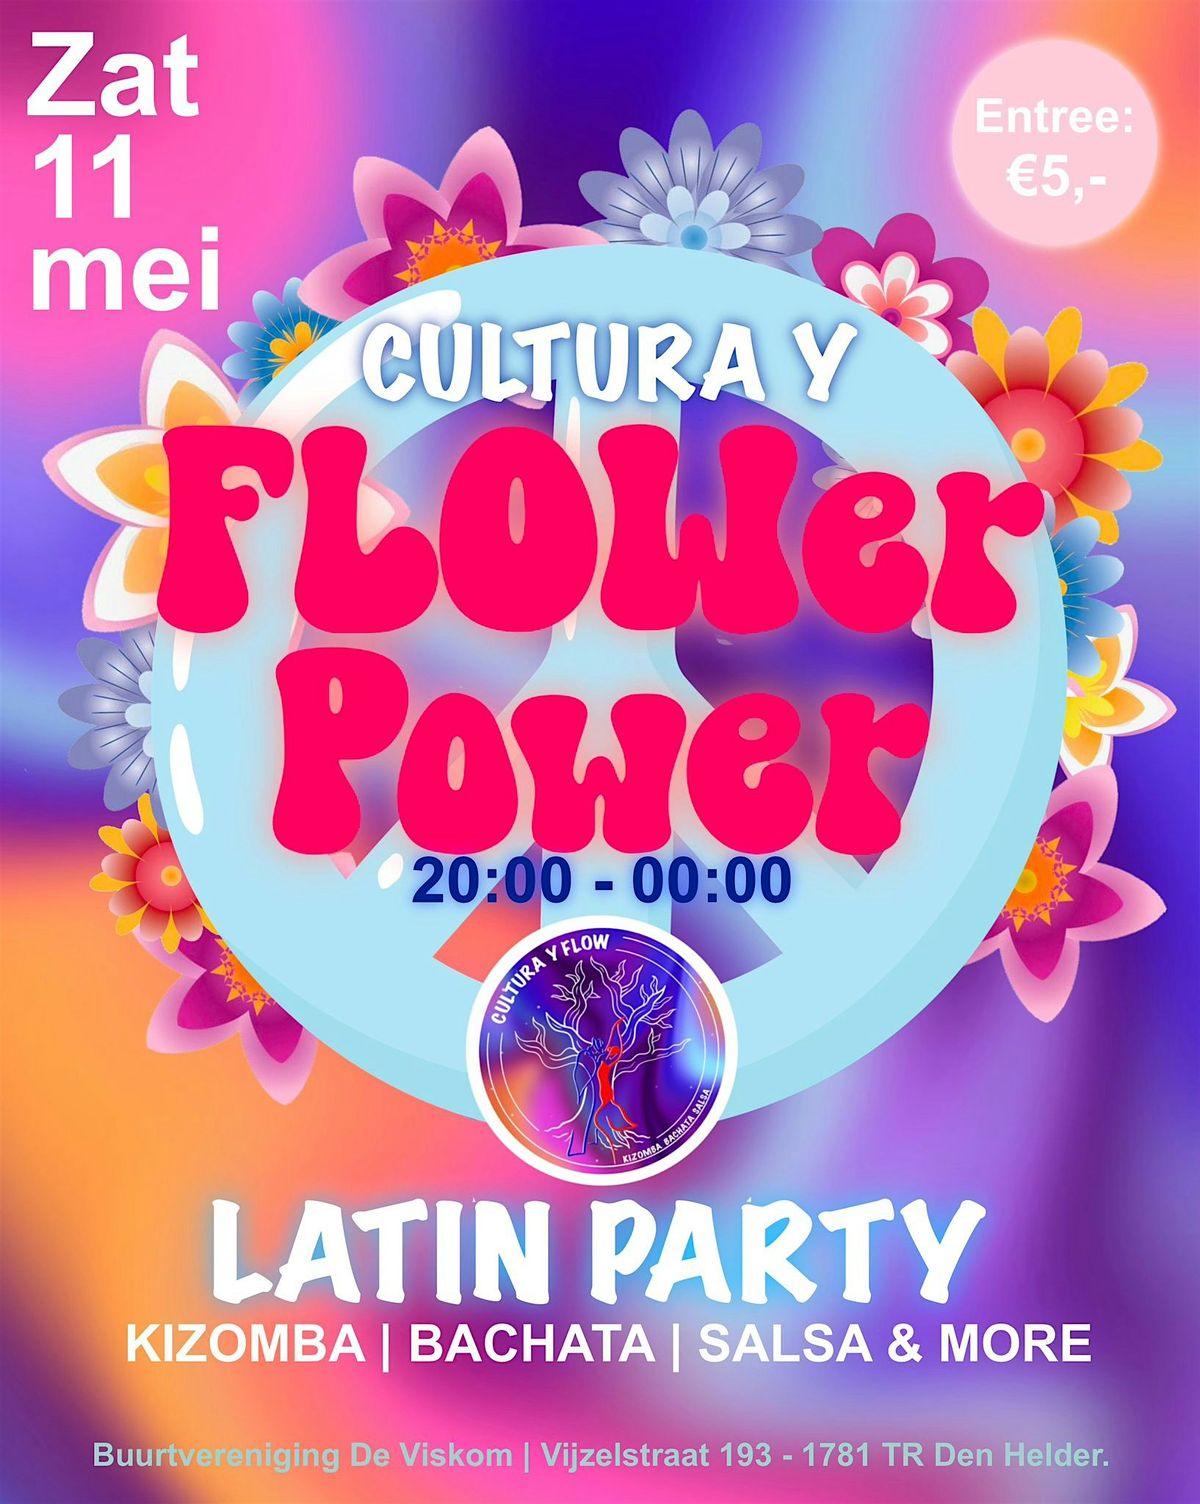 Cultura Y FLOWer Power